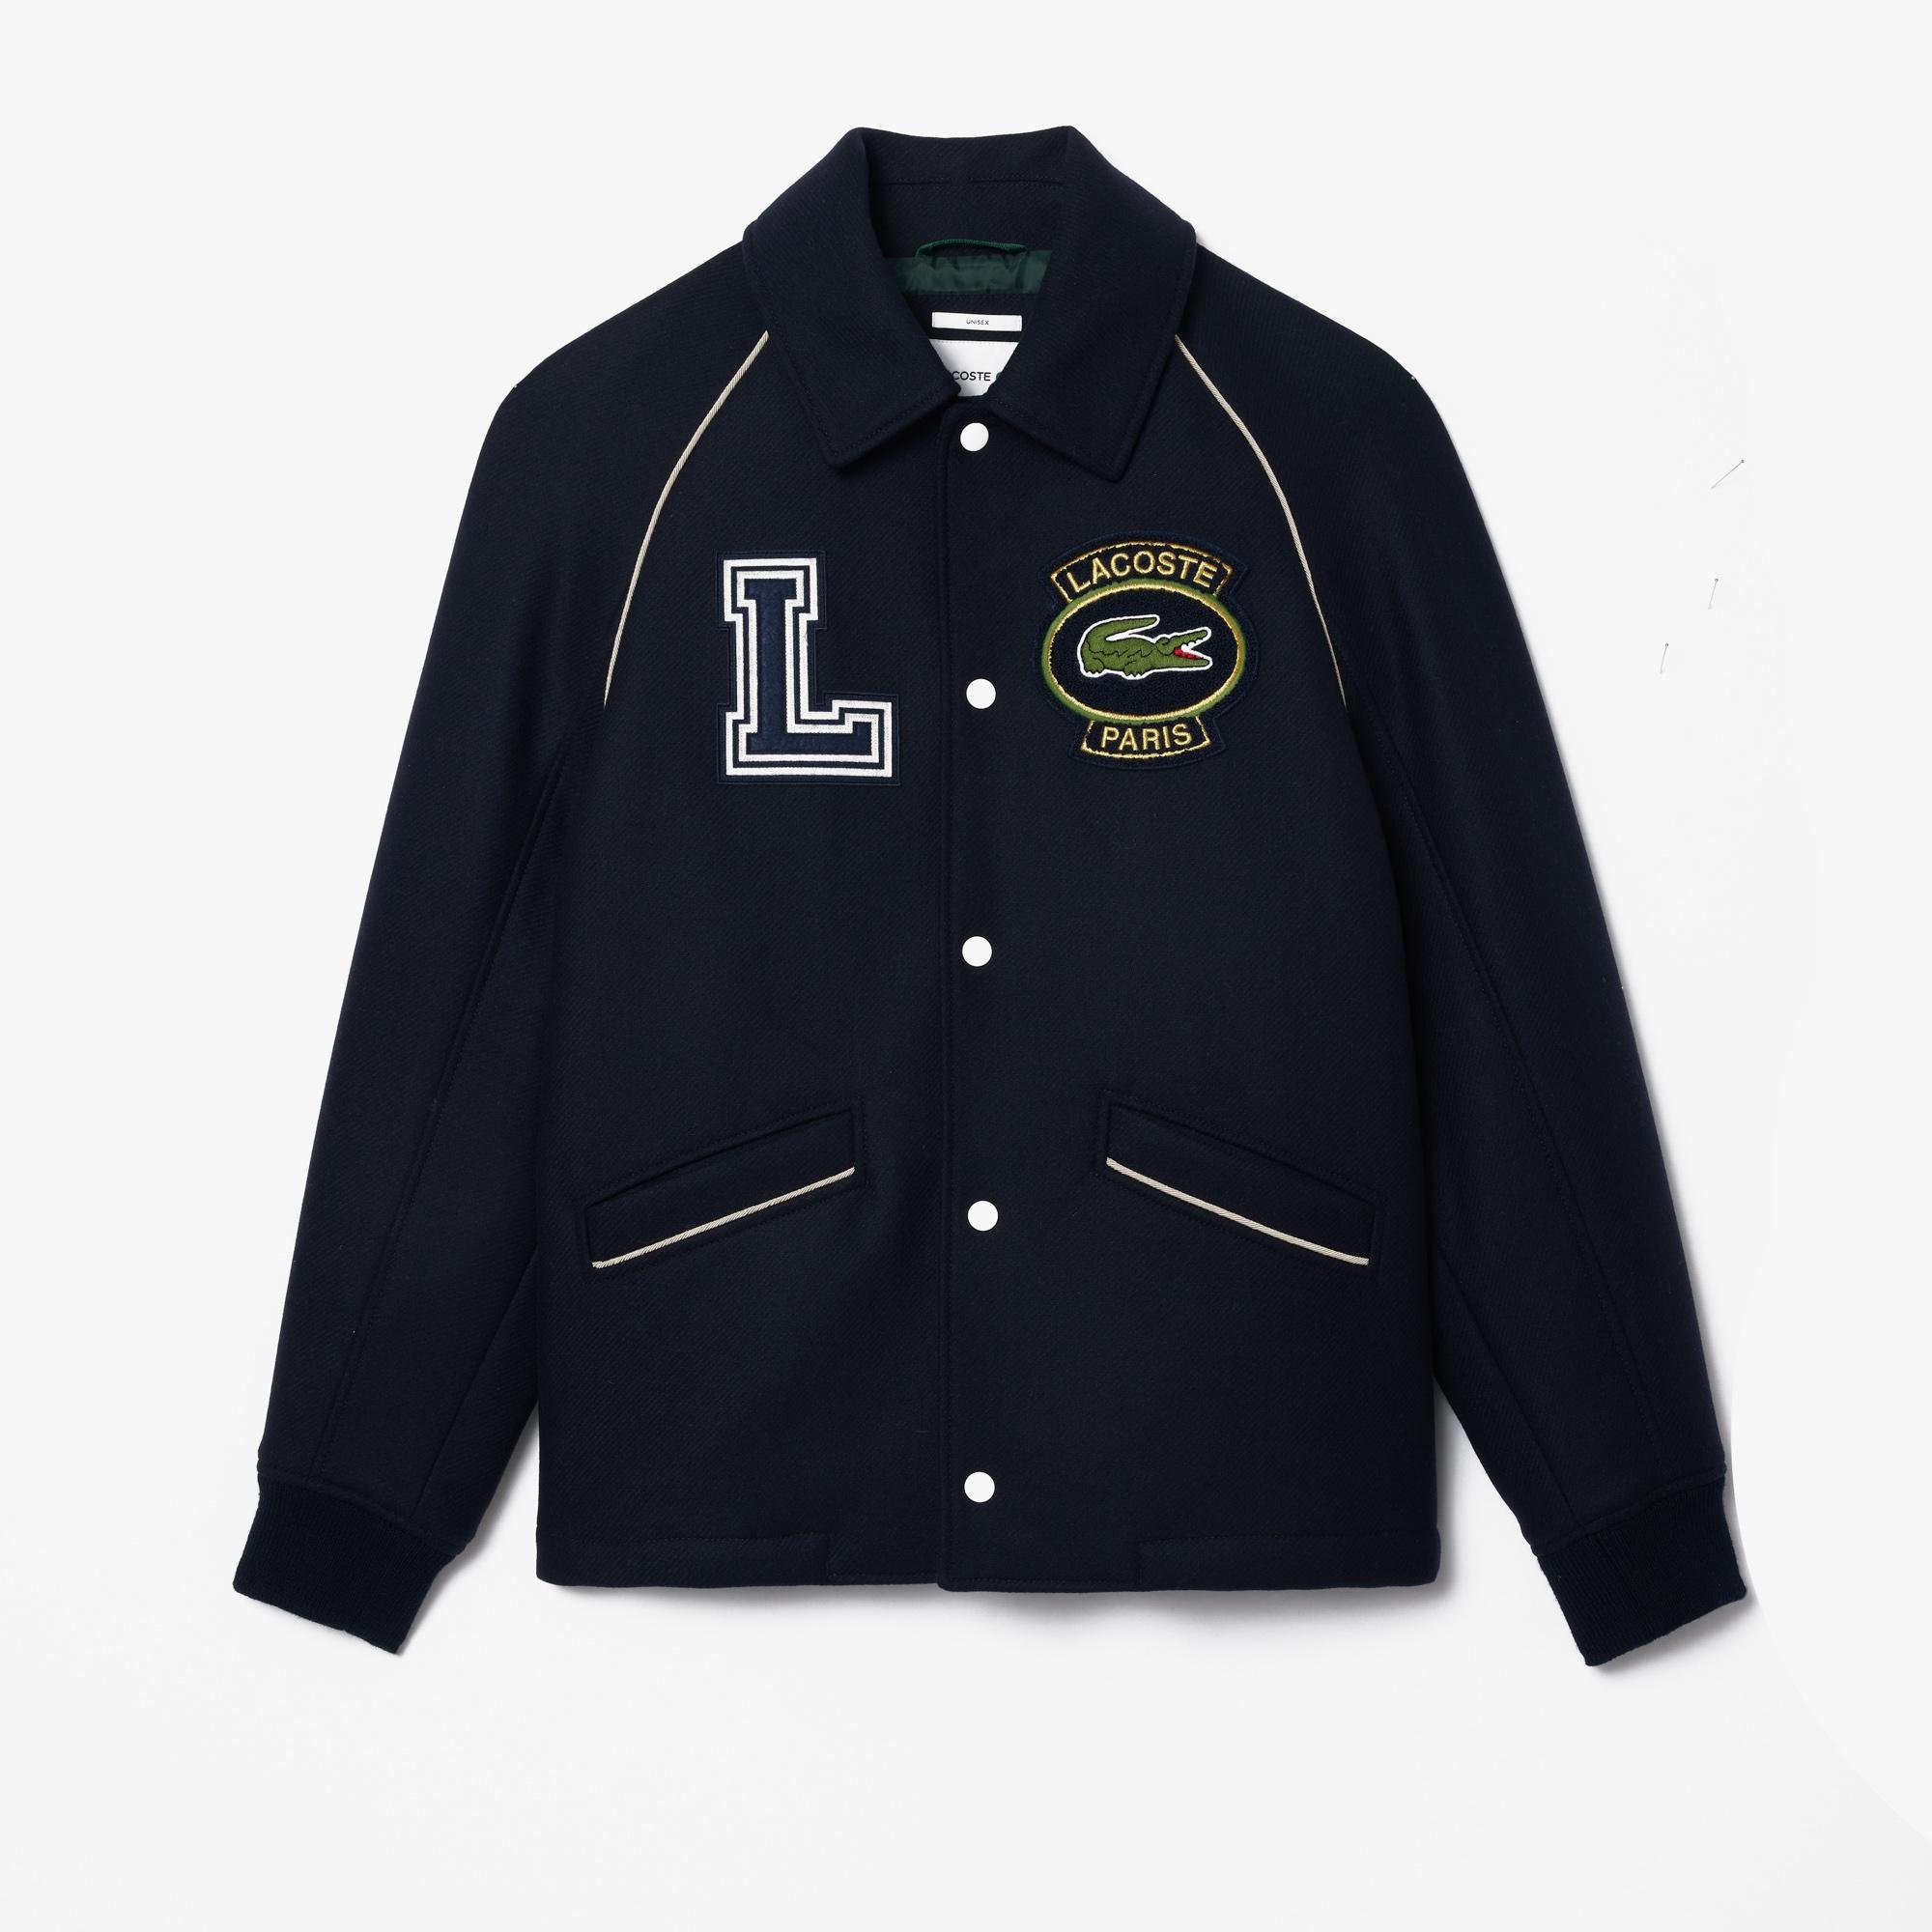 Lacoste bunda z vysoce kvalitní vlny s logo univerzity